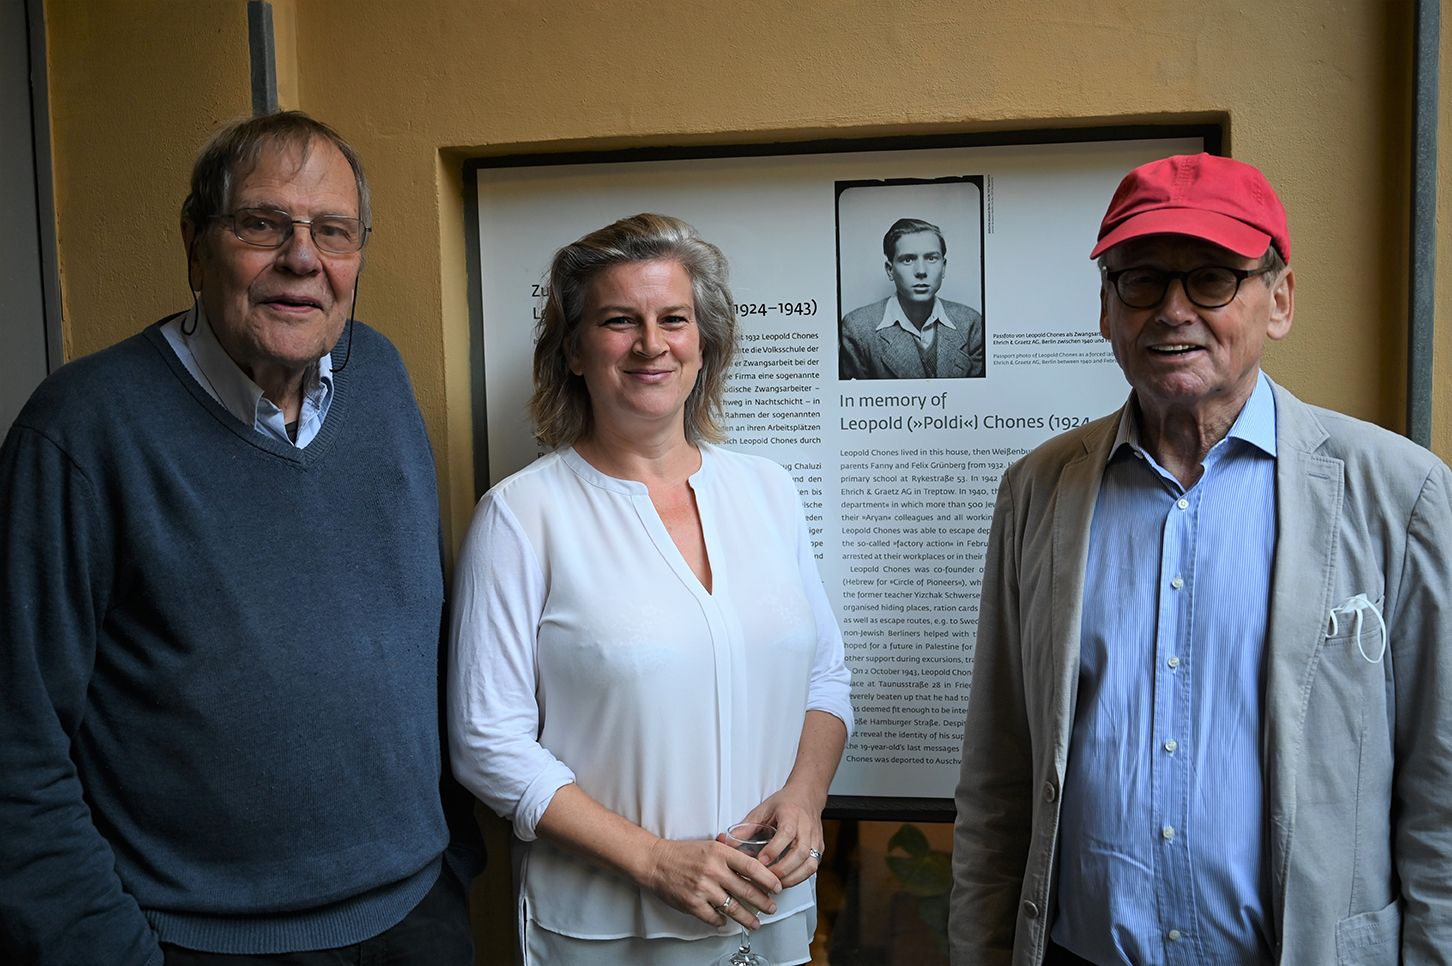 Einweihung der Gedenktafel für Leopold („Poldi“) Chones (1924-1943) mit Claus Offe, Johanna Häussermann und Volker Wild